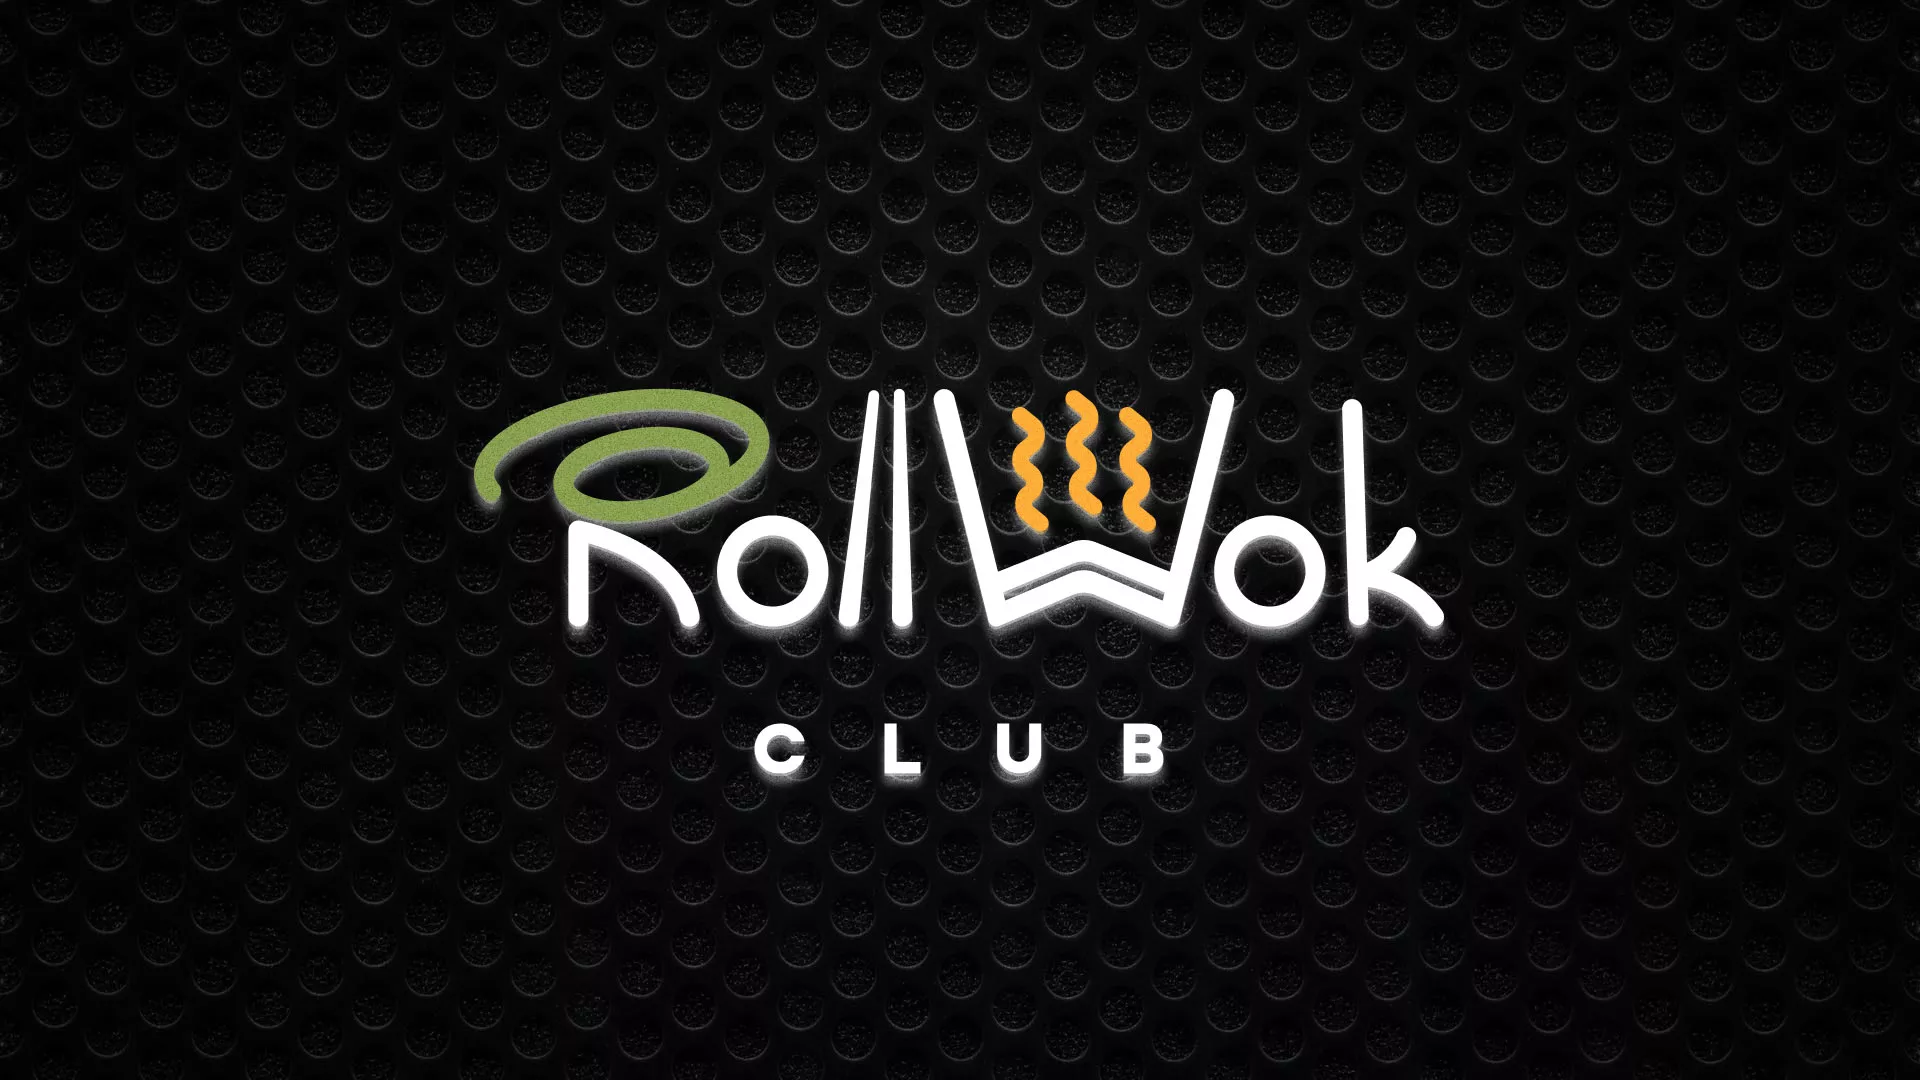 Брендирование торговых точек суши-бара «Roll Wok Club» в Люберцах